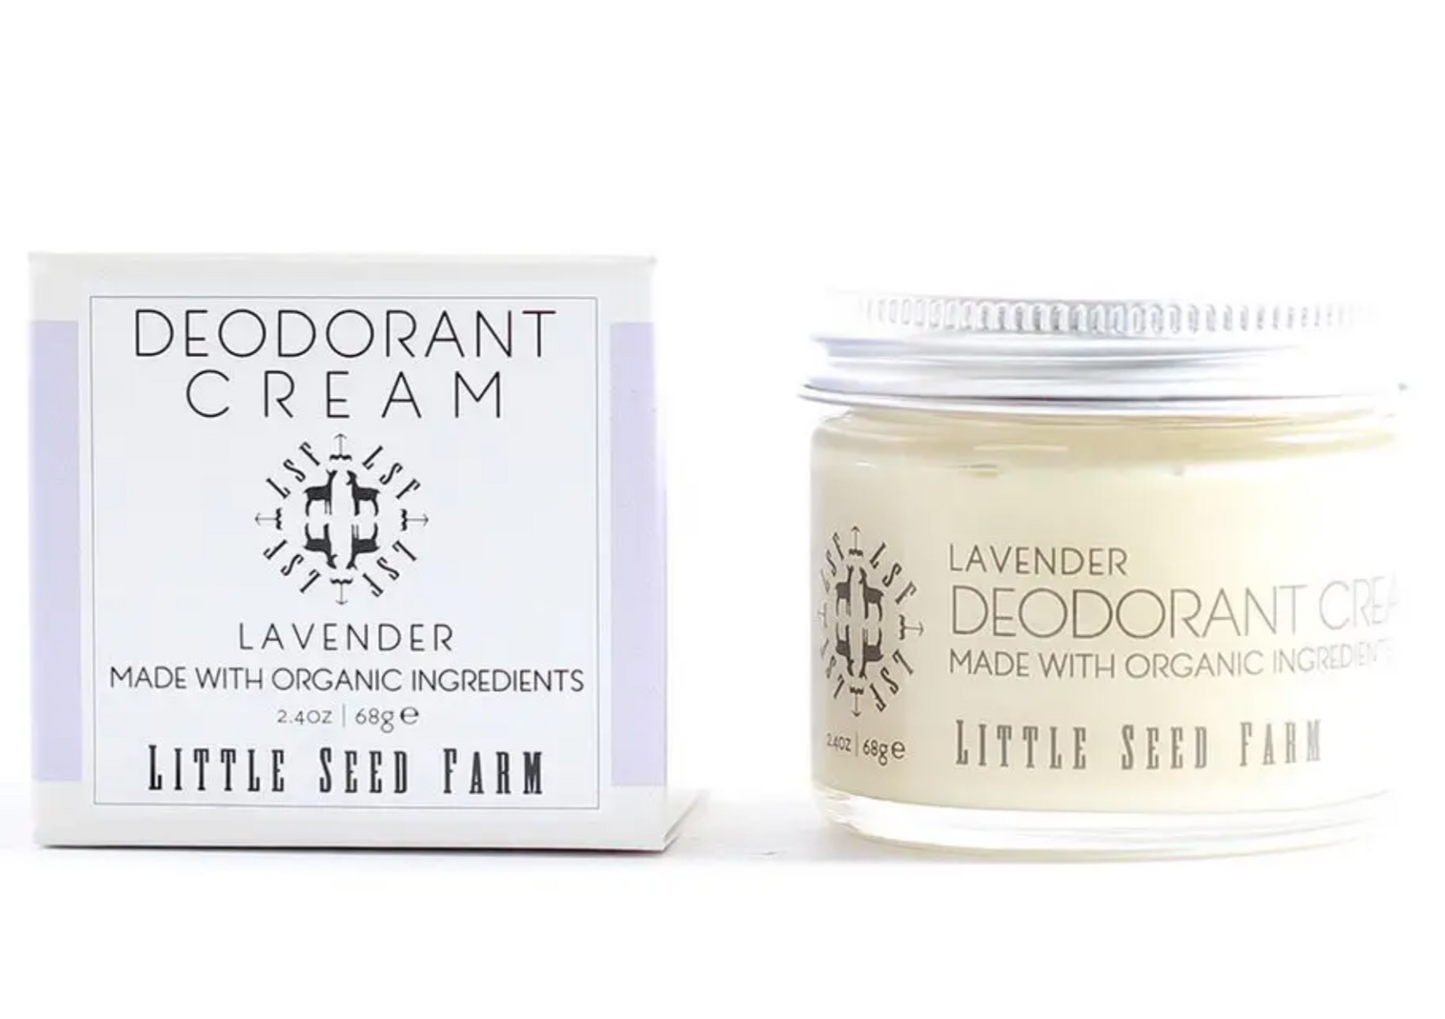 Deodorant Cream - Lavender